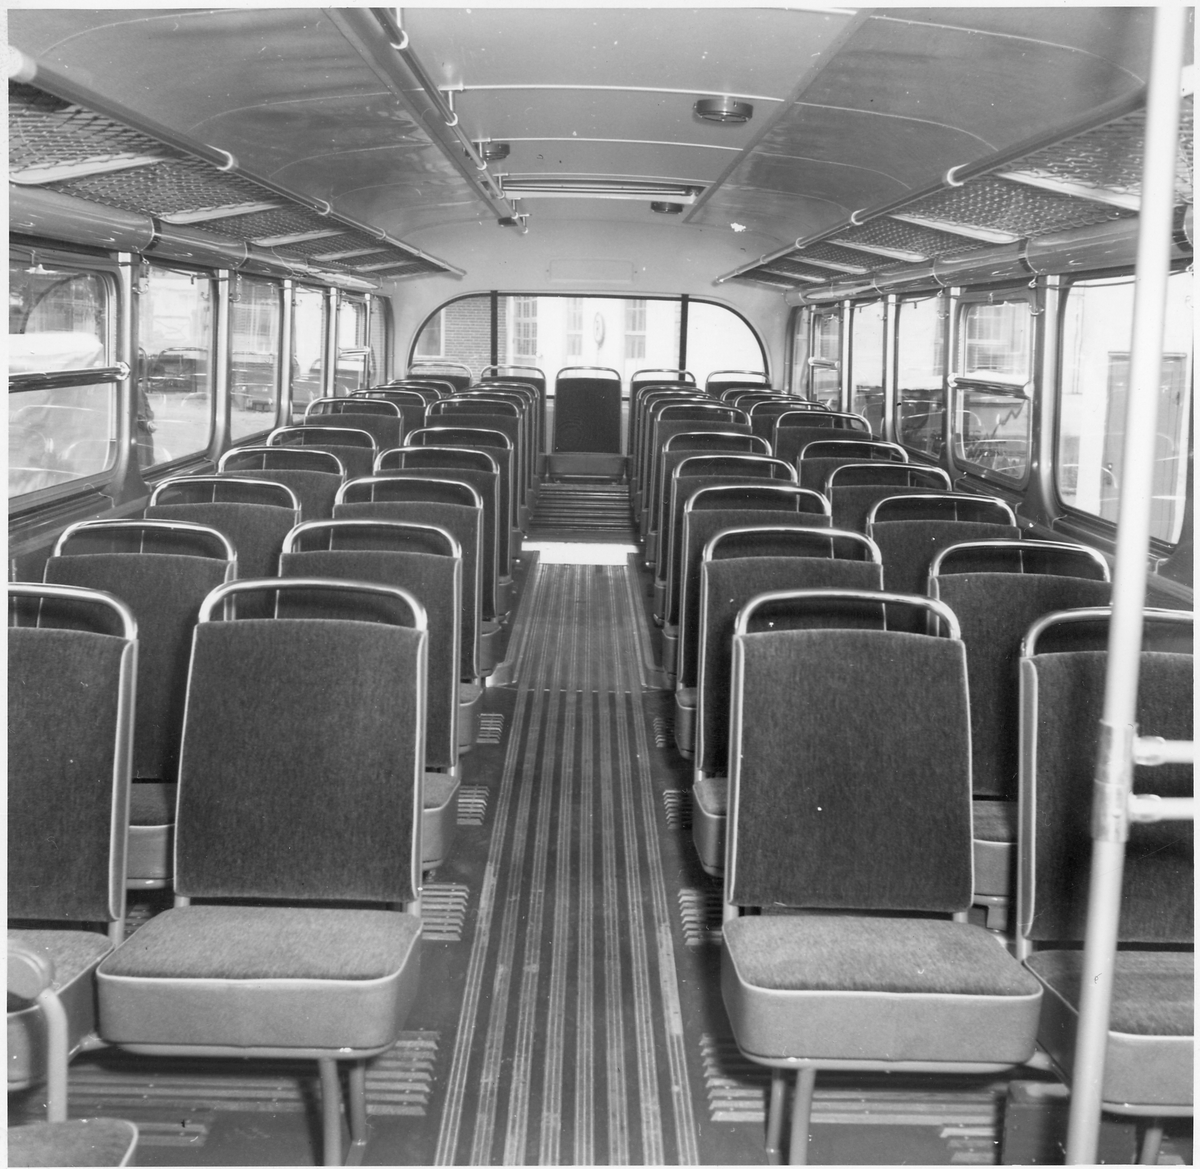 Sittplatser i en buss.